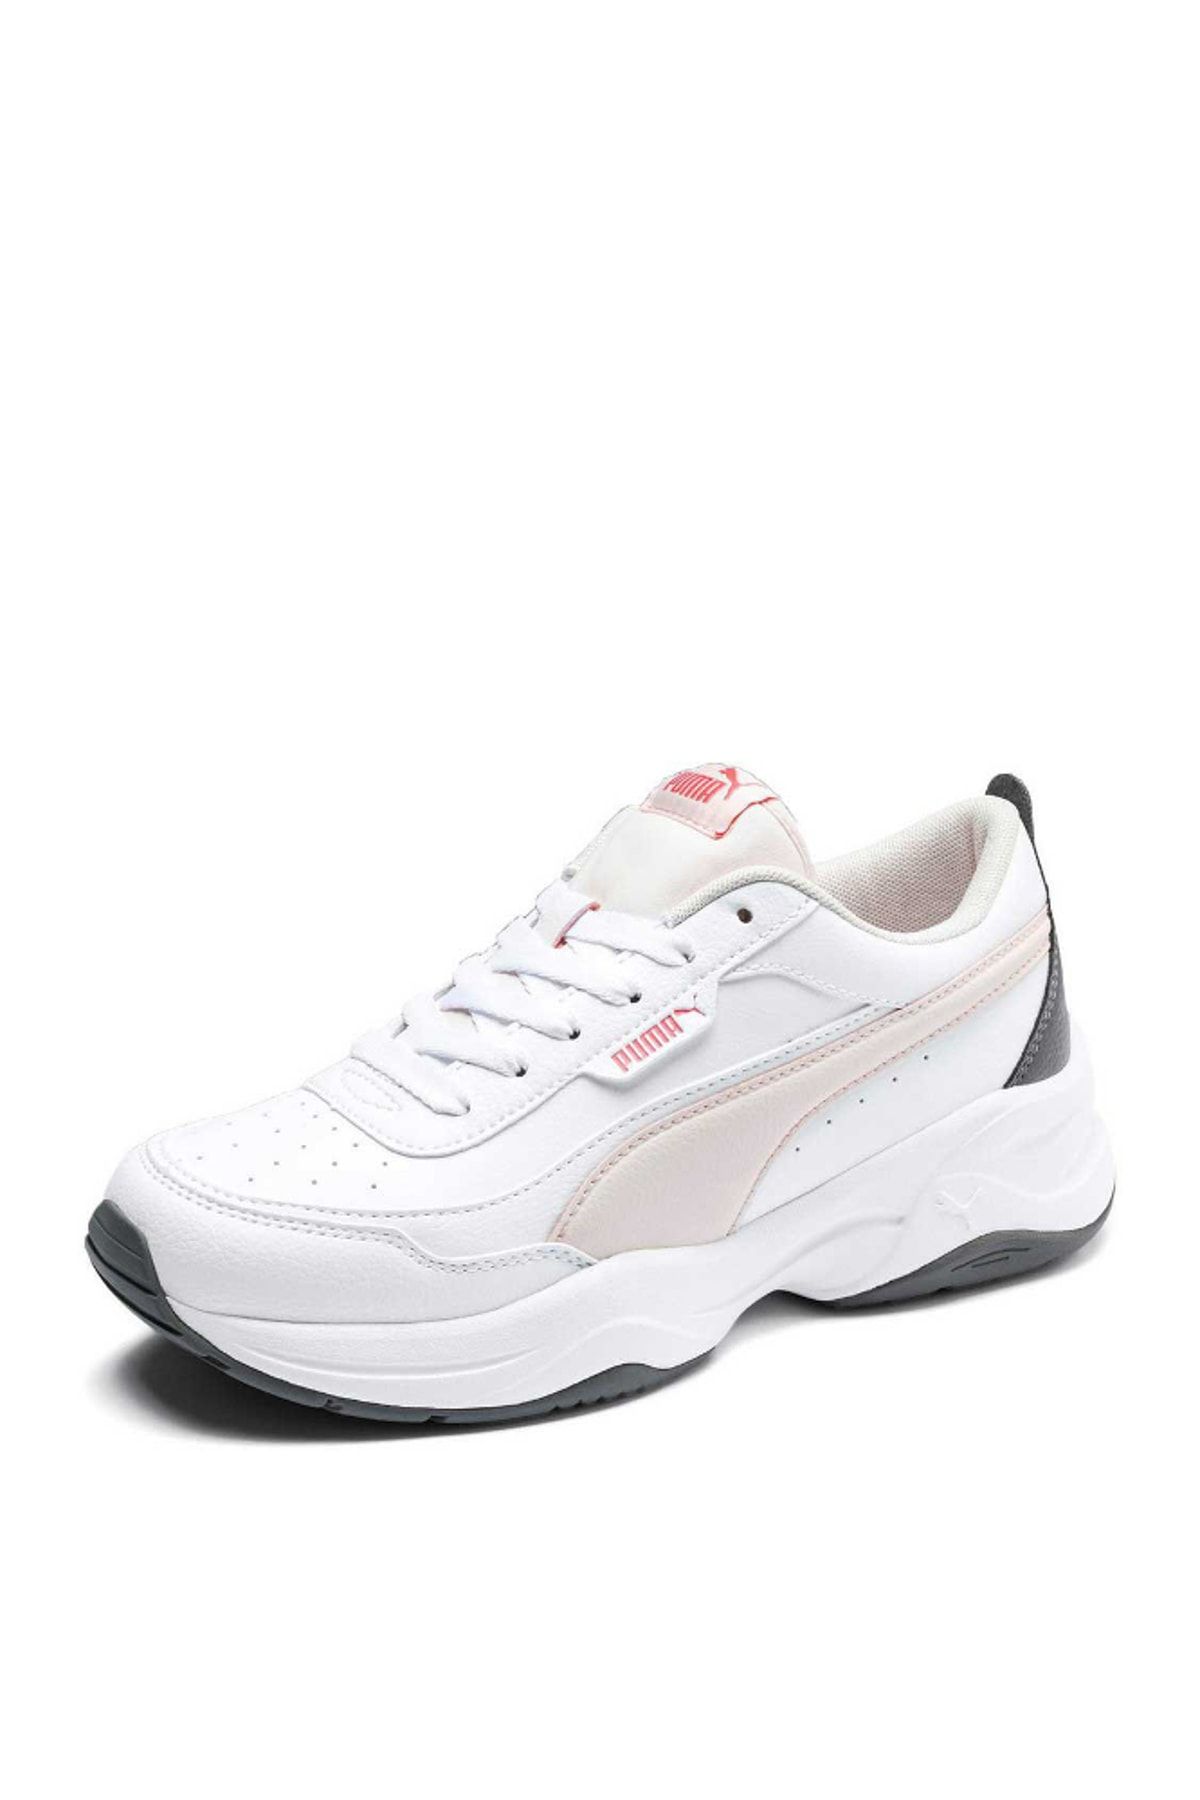 Puma CILIA MODE Beyaz Kadın Sneaker Ayakkabı 100547143